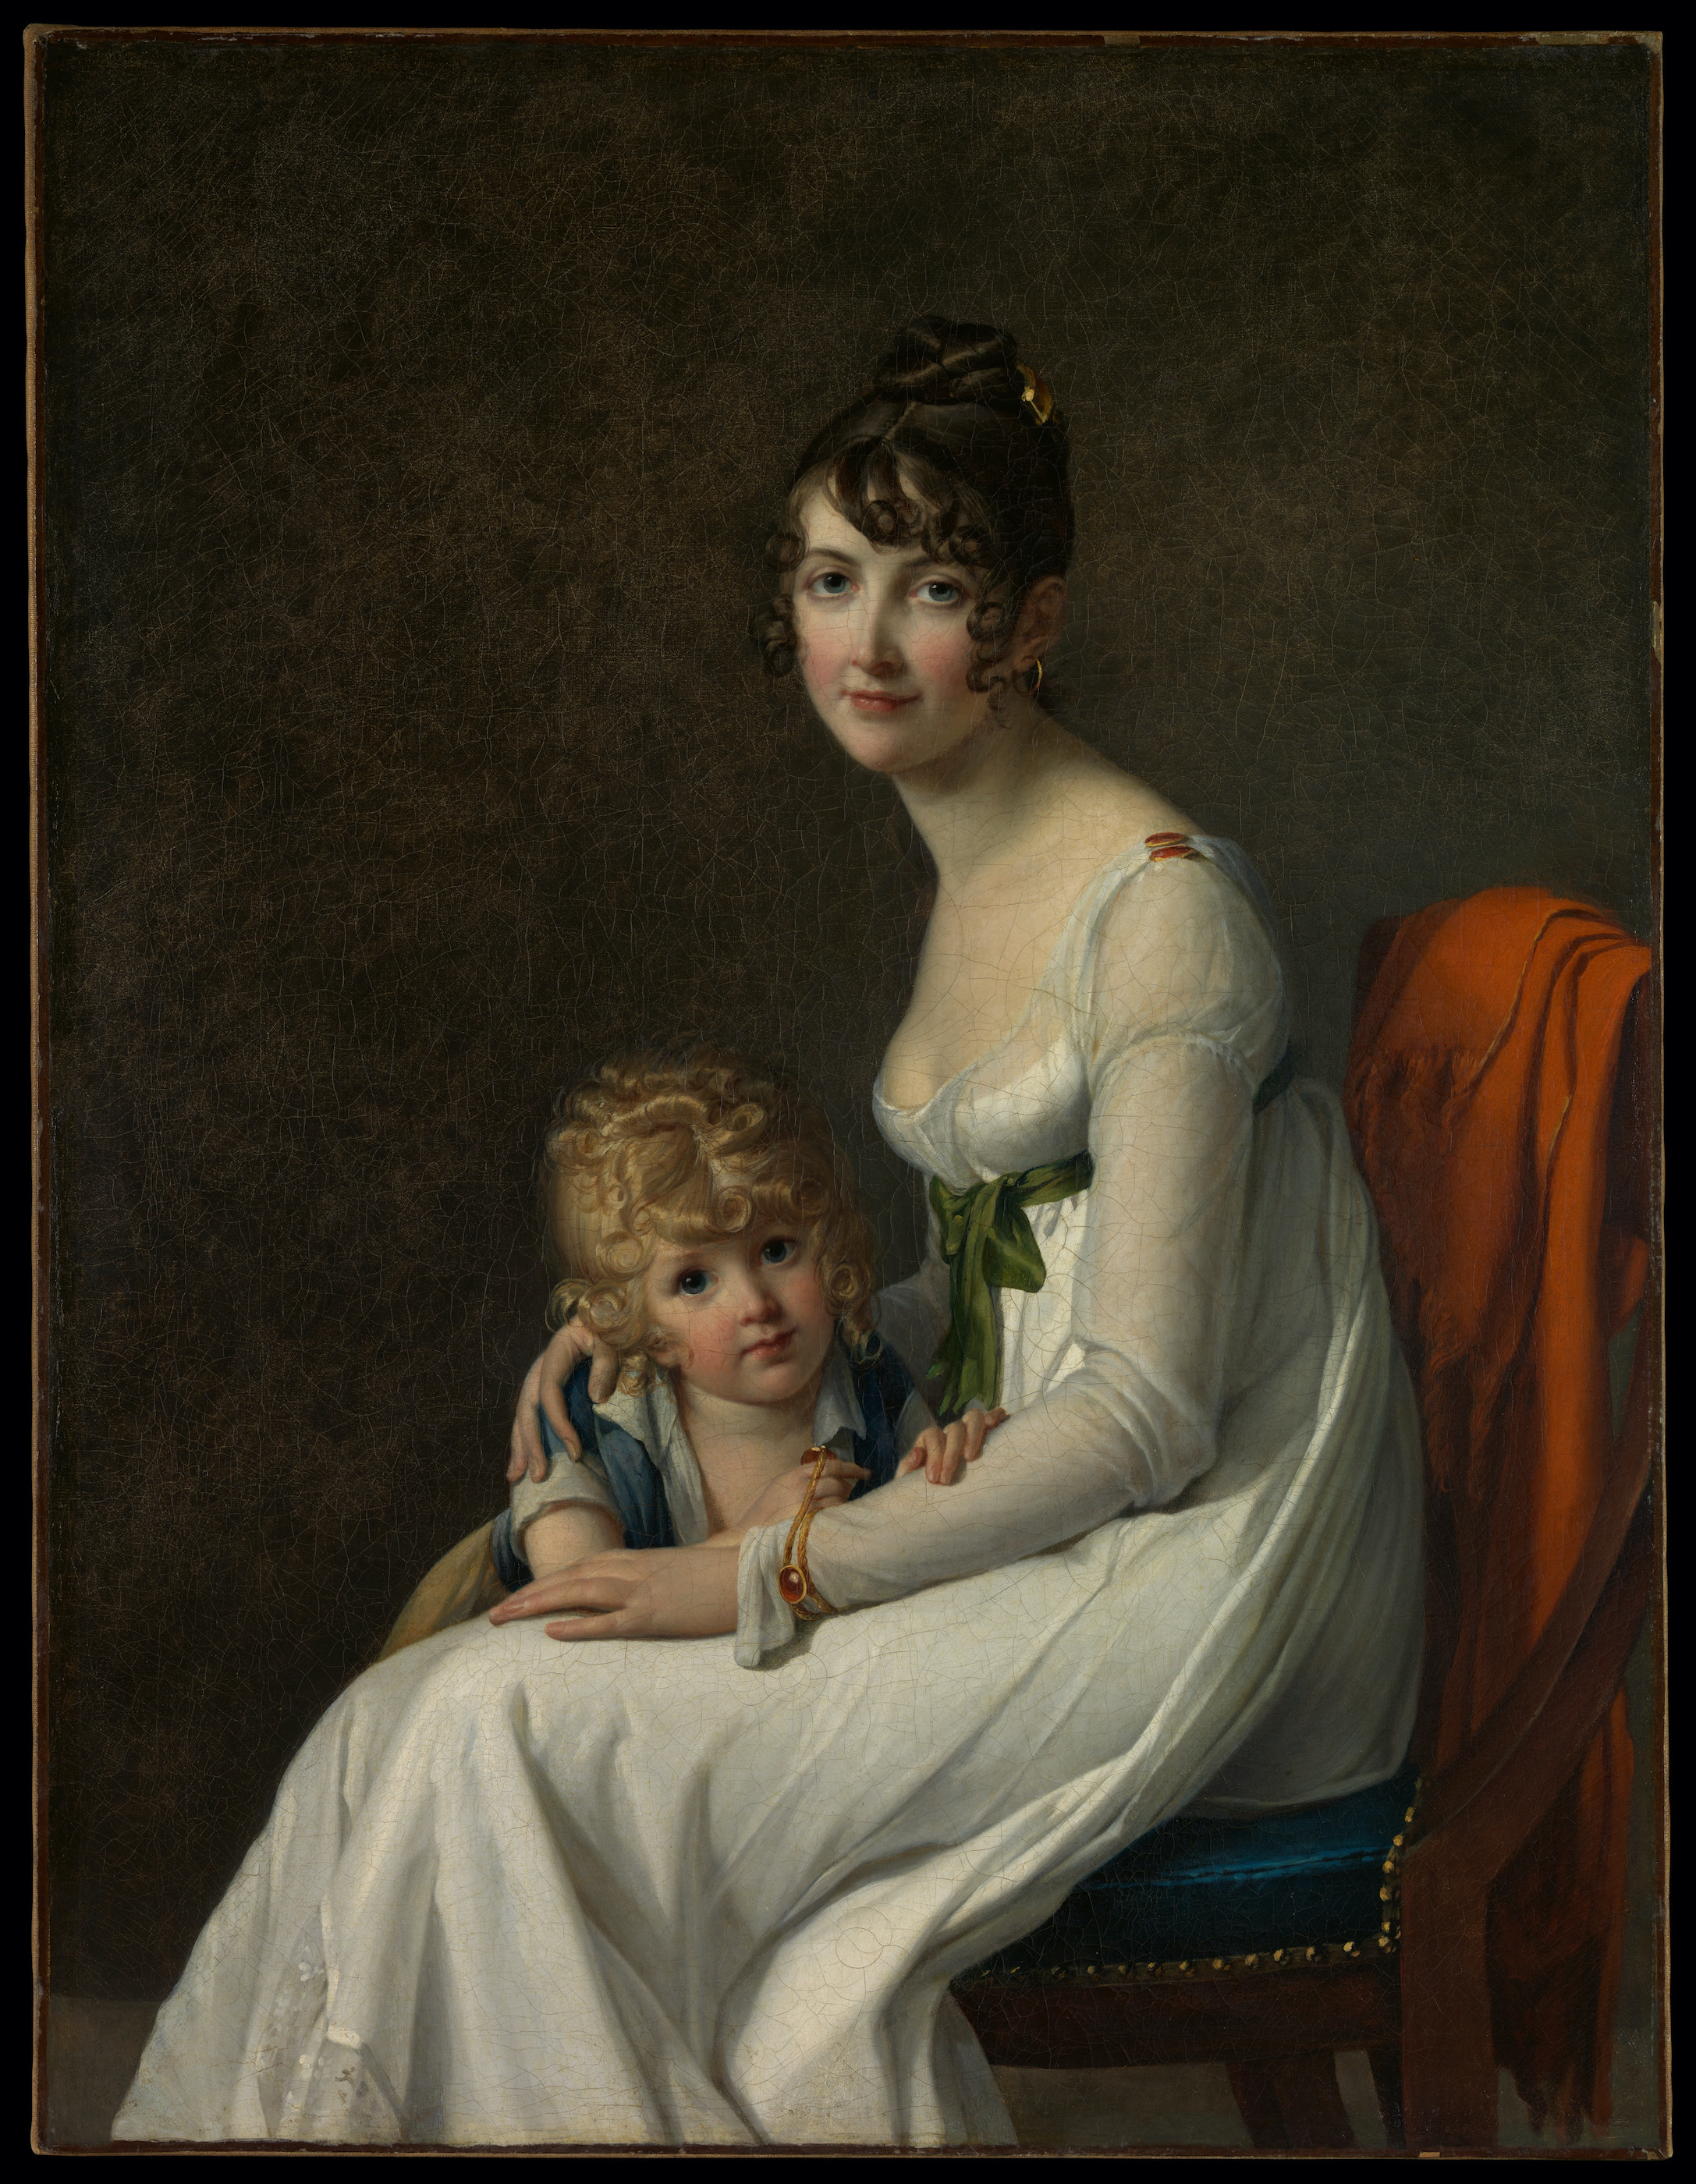 Madame Desbassayns de Richemont y su hijo by Marie Benoist - 1802 - 116,8 x 89,5 cm Museo Metropolitano de Arte